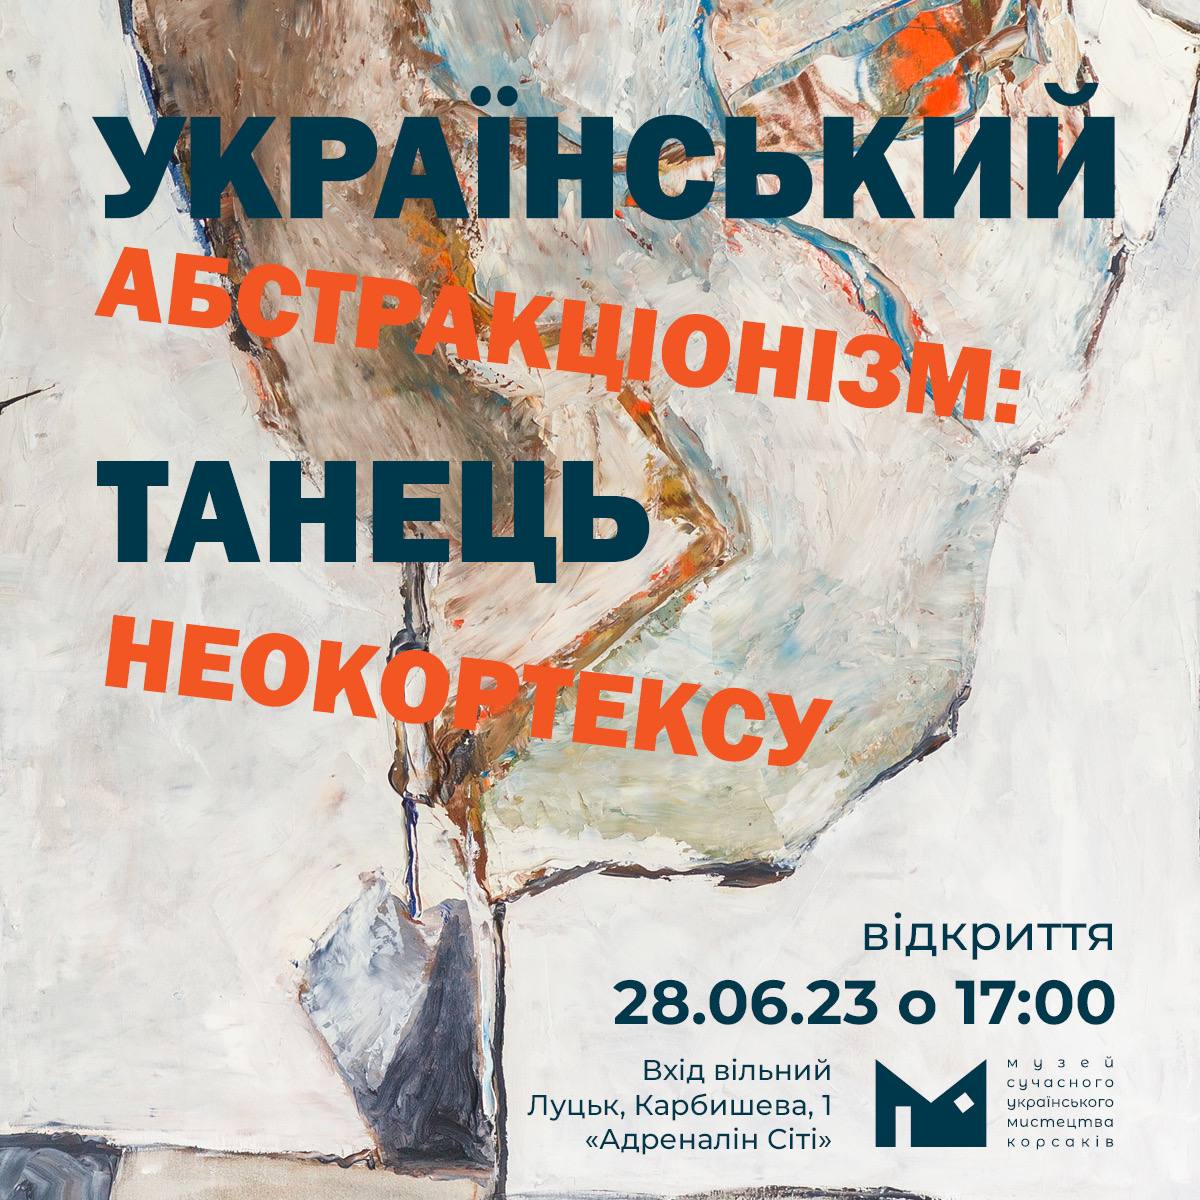 (Українська) 28 червня о 17:00 в Музеї Корсаків відбудеться відкриття виставки «Український абстракціонізм: танець неокортексу»